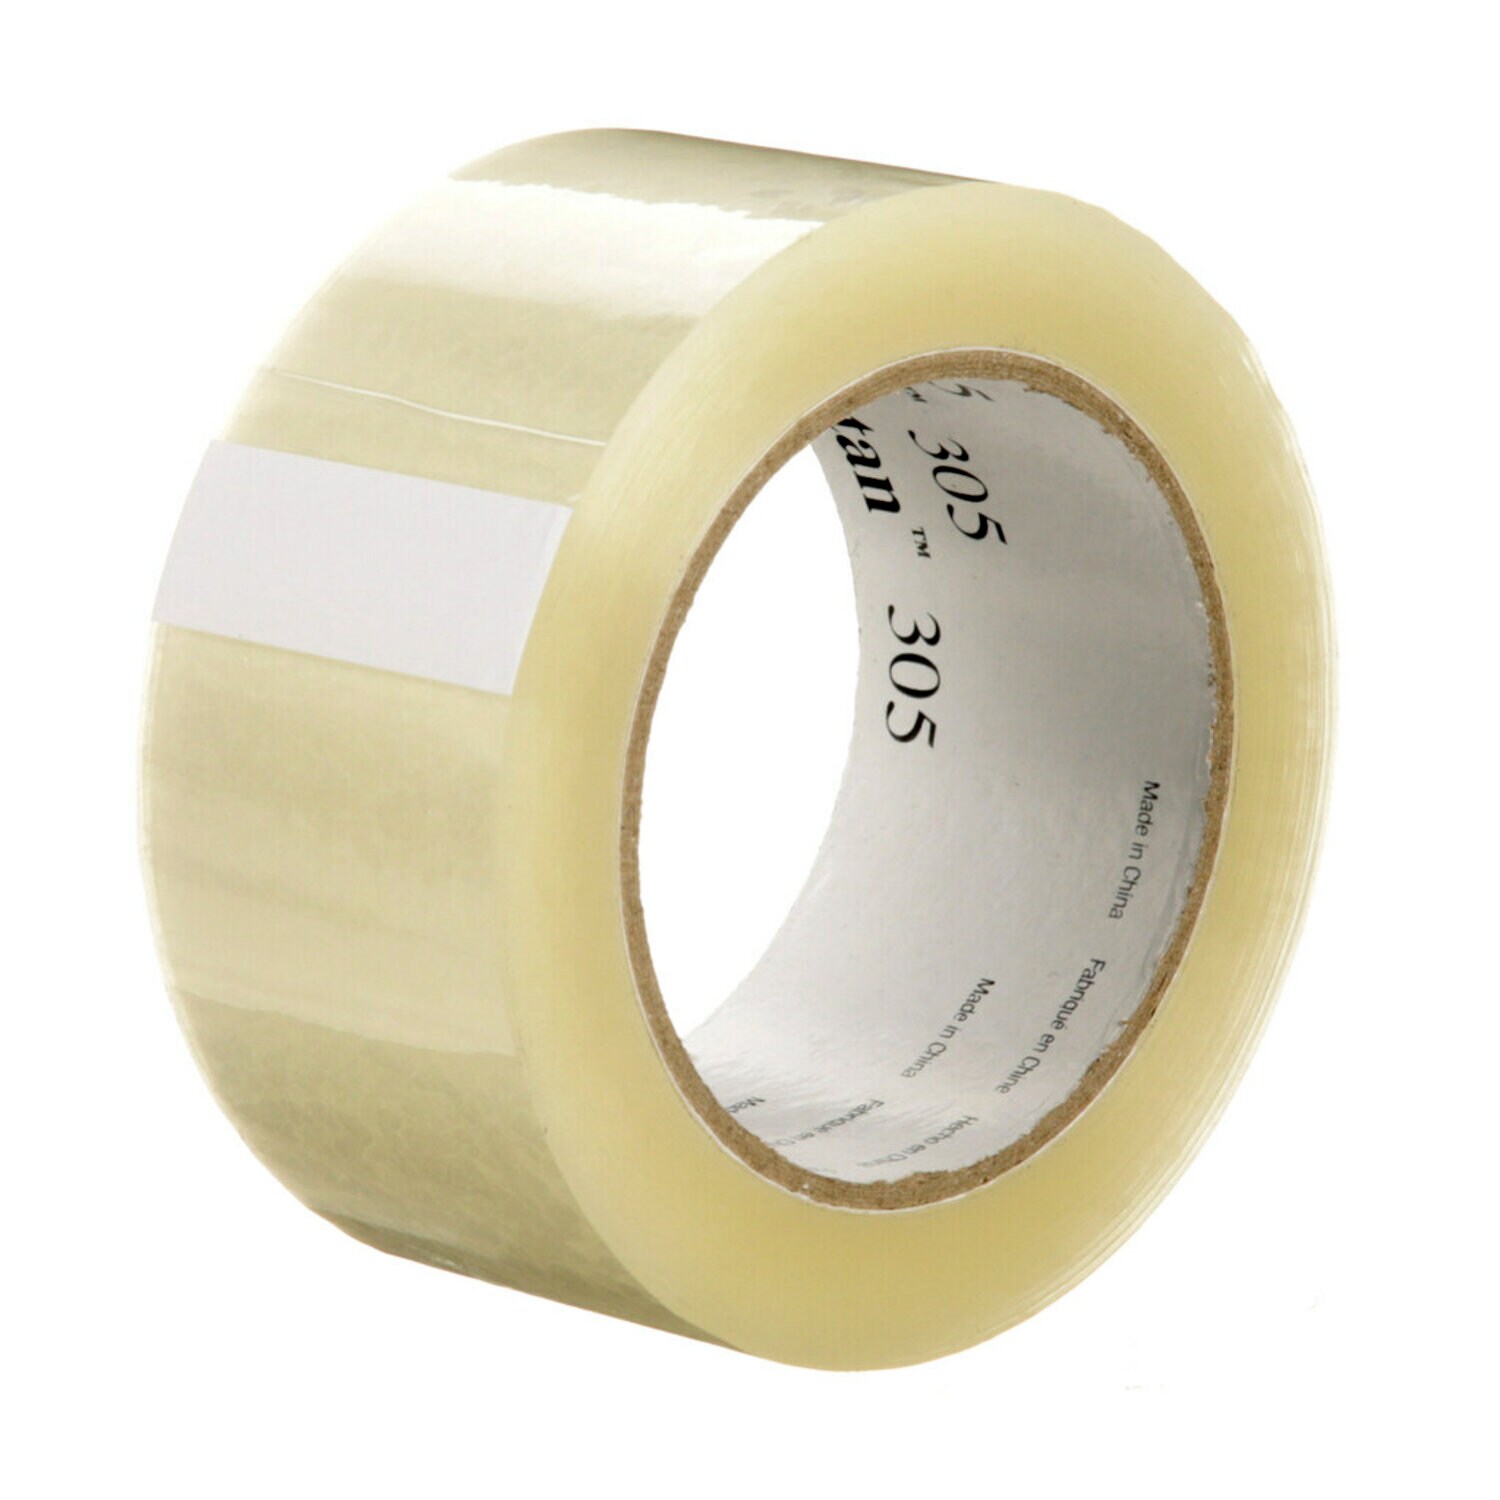 7100241143 - Tartan Box Sealing Tape 305, Clear, 48 mm x 100 m, 36 Rolls/Case